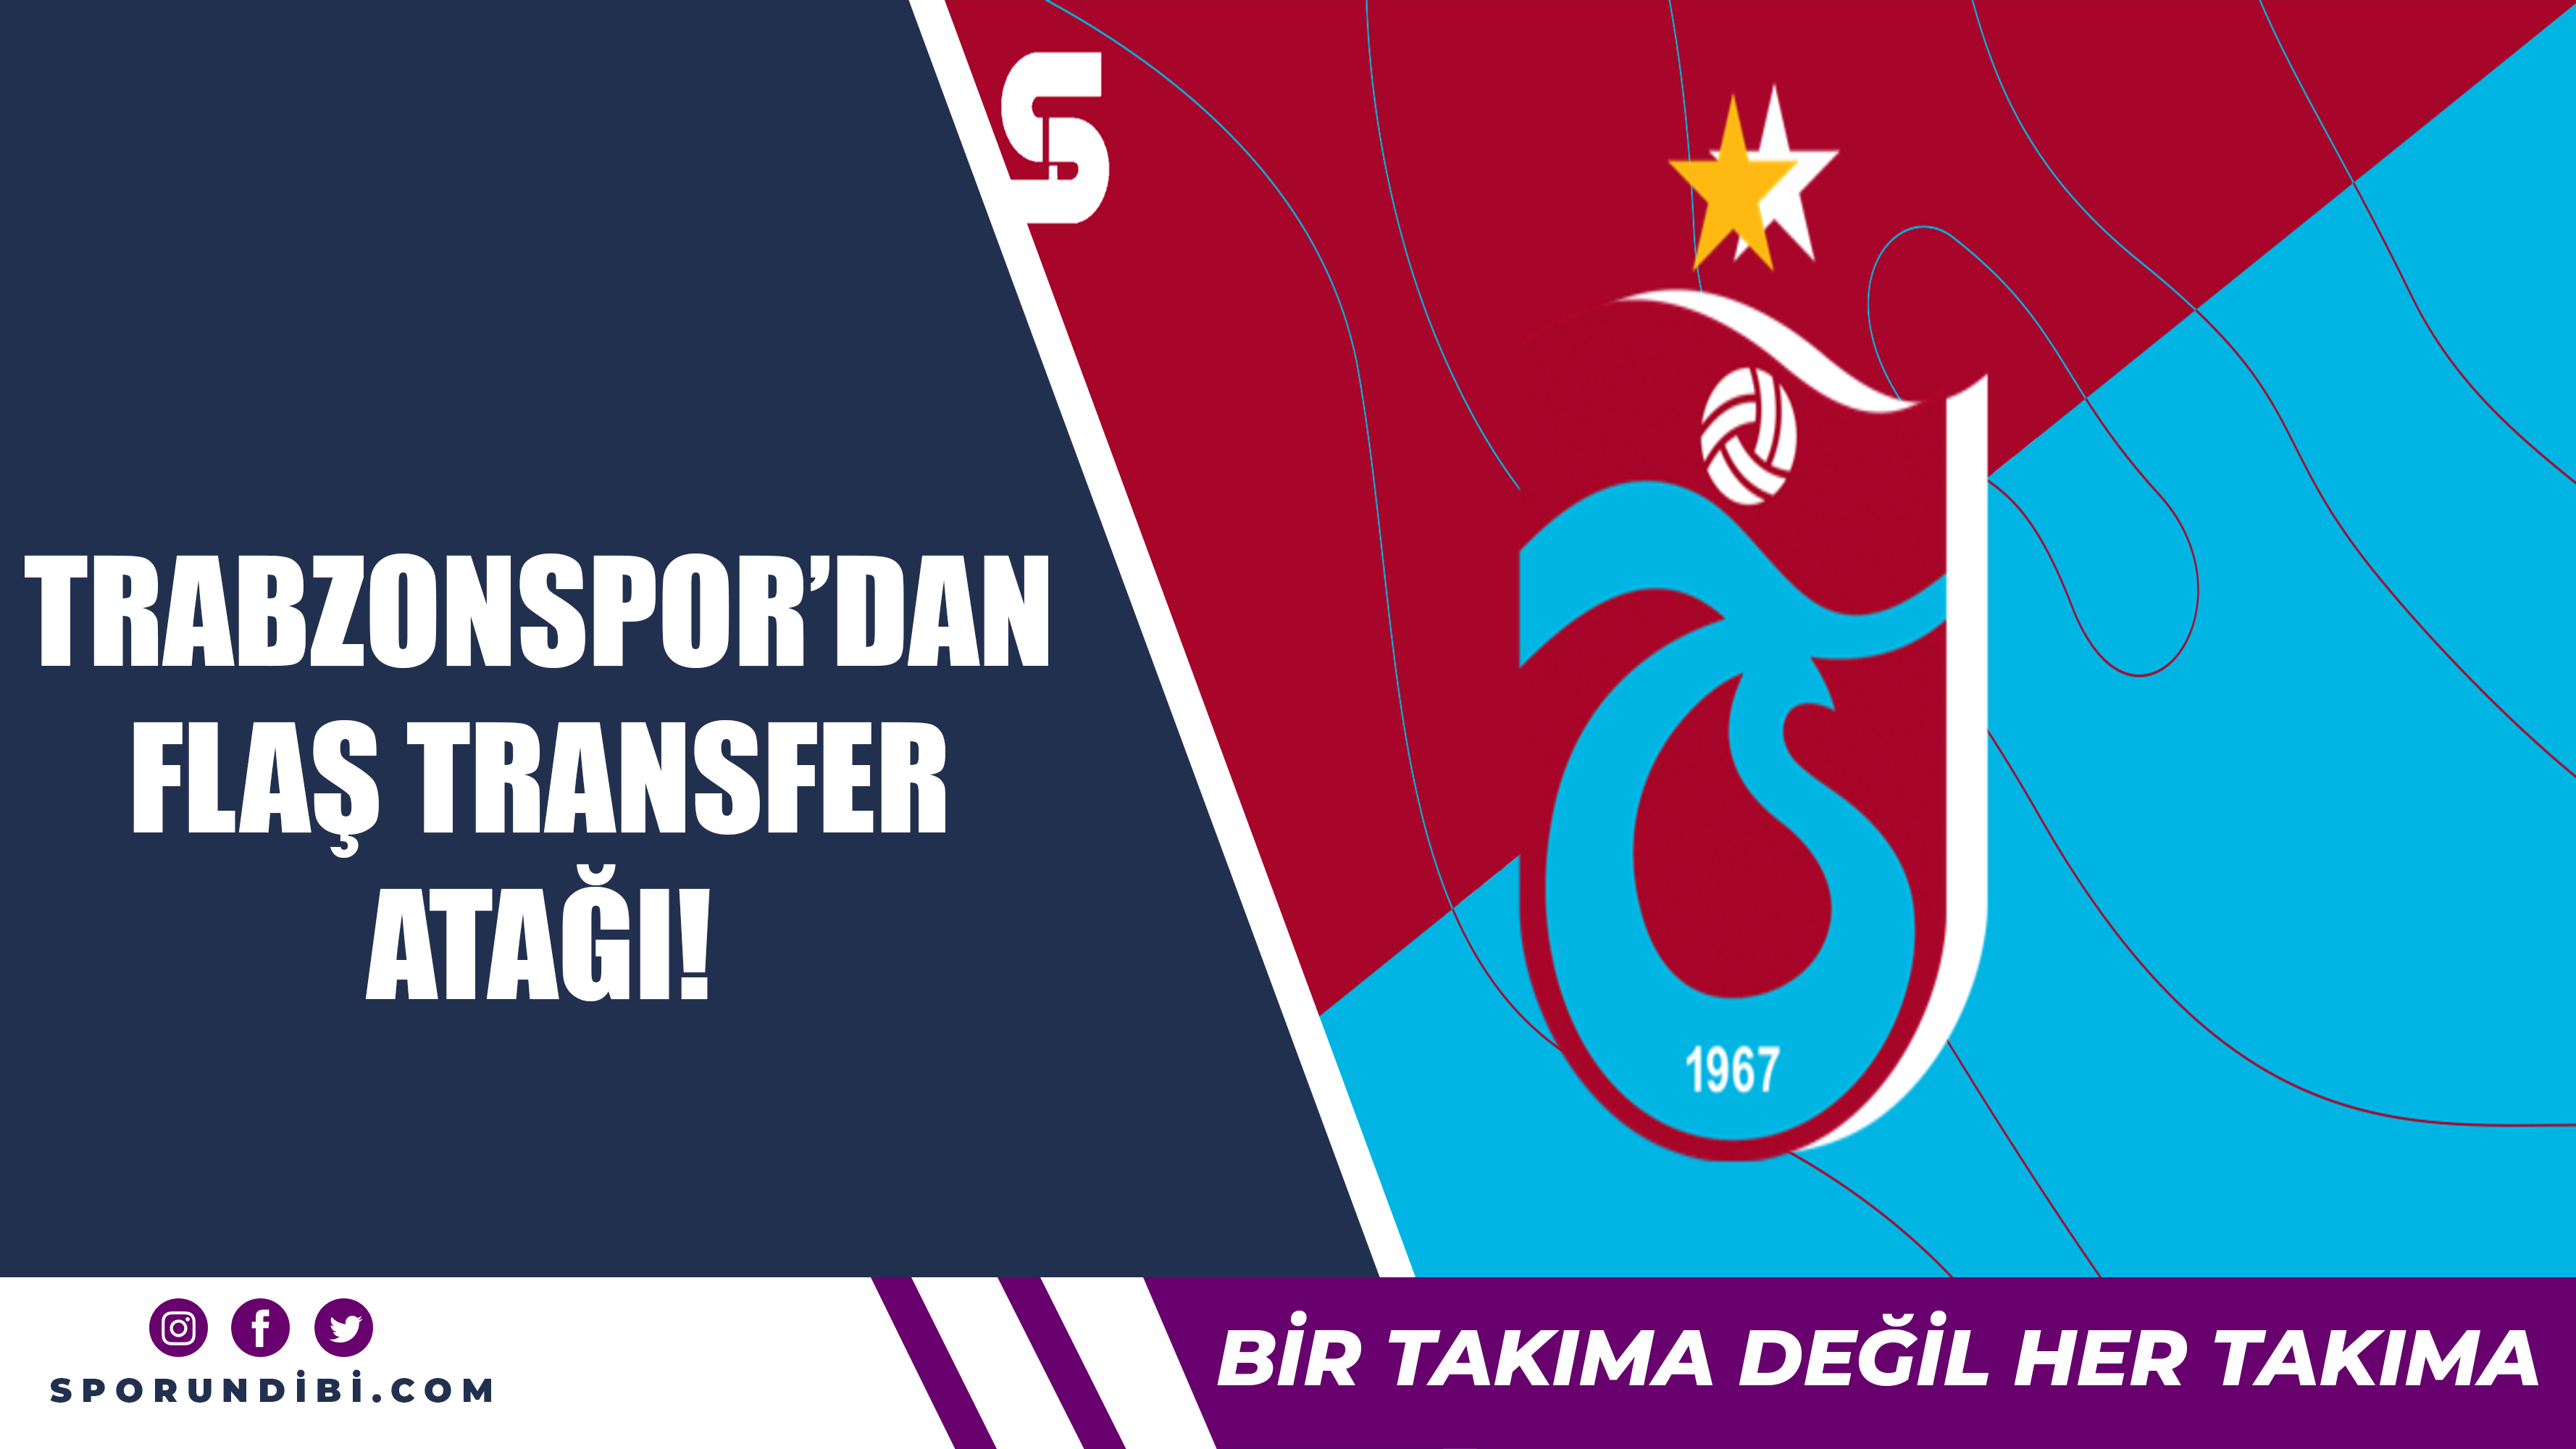 Trabzonspor'dan flaş transfer atağı!